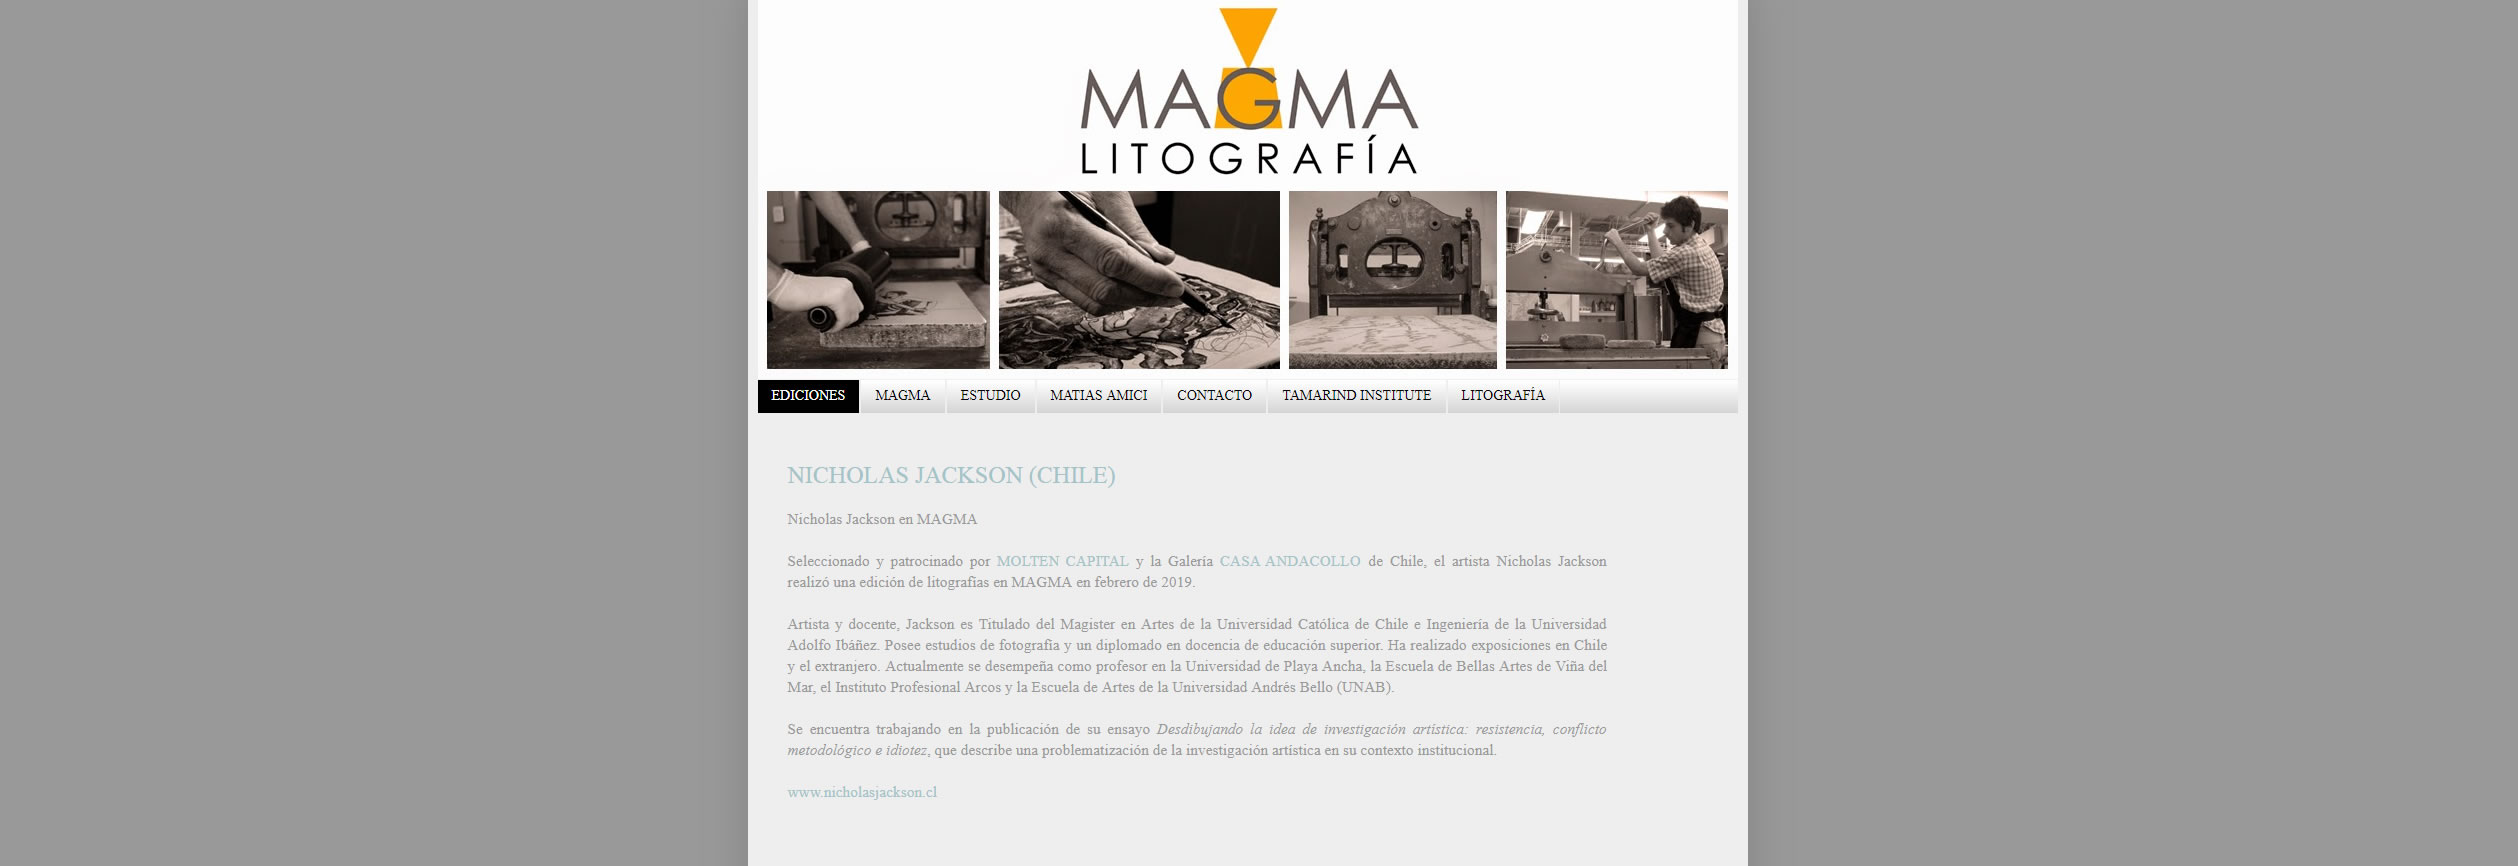 magma_lotografia_galeria_de_gravura